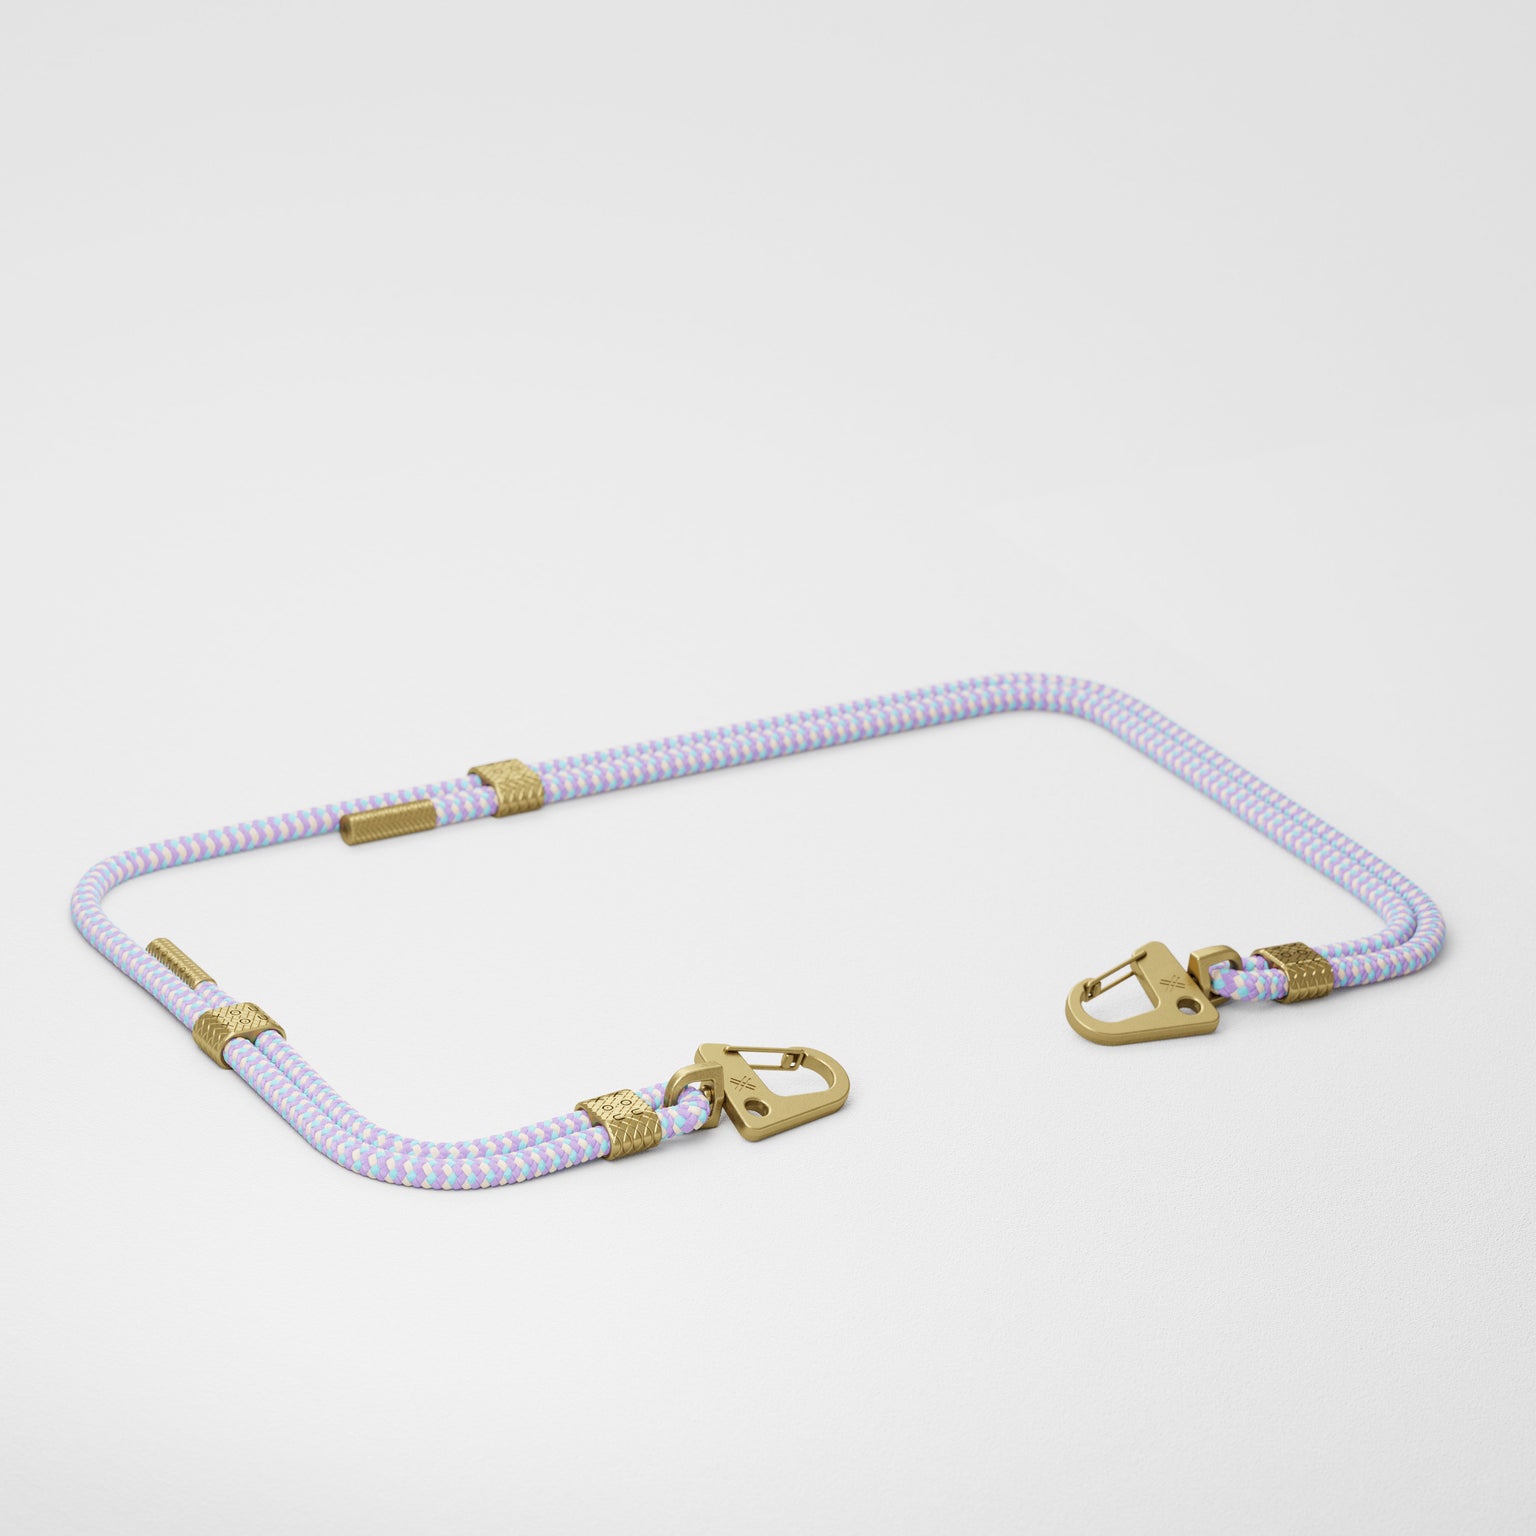 Vibrant Pastel Carabiner Rope